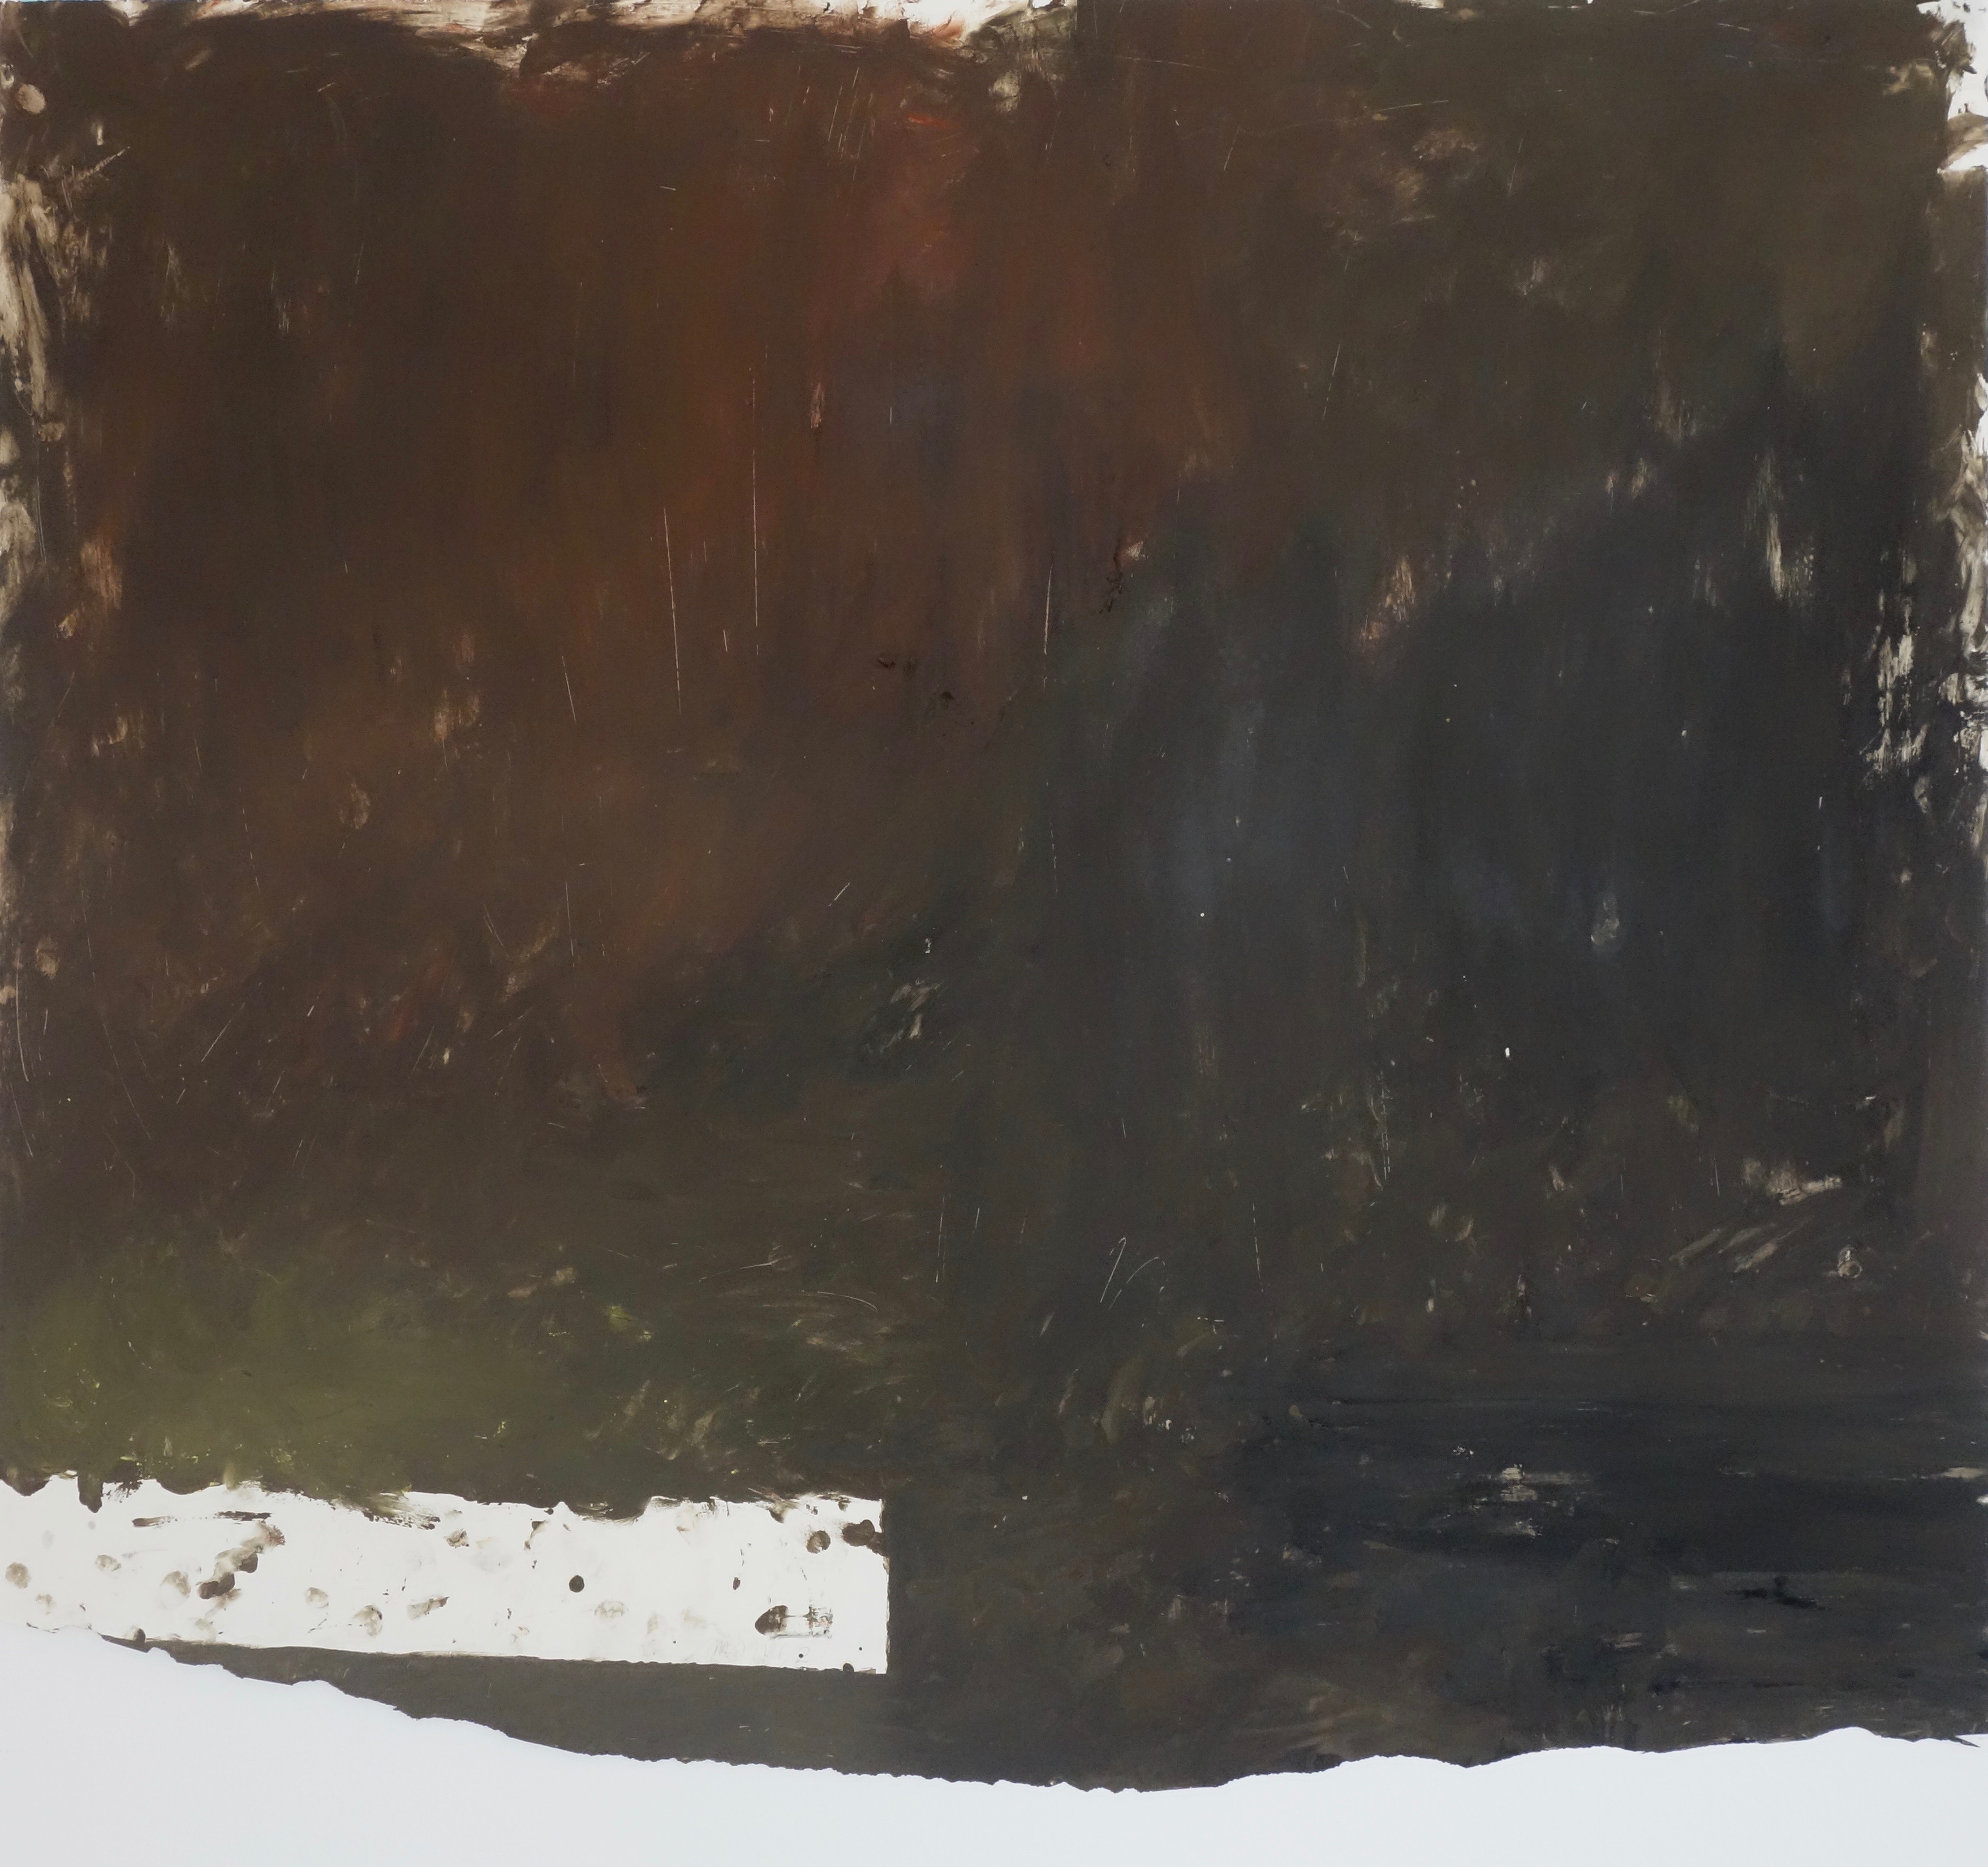 Arbeit auf Papier 2, Eiöltempera und Öl auf Papier, ca. 77,5 x 88 cm, 1986, Erwin Holl